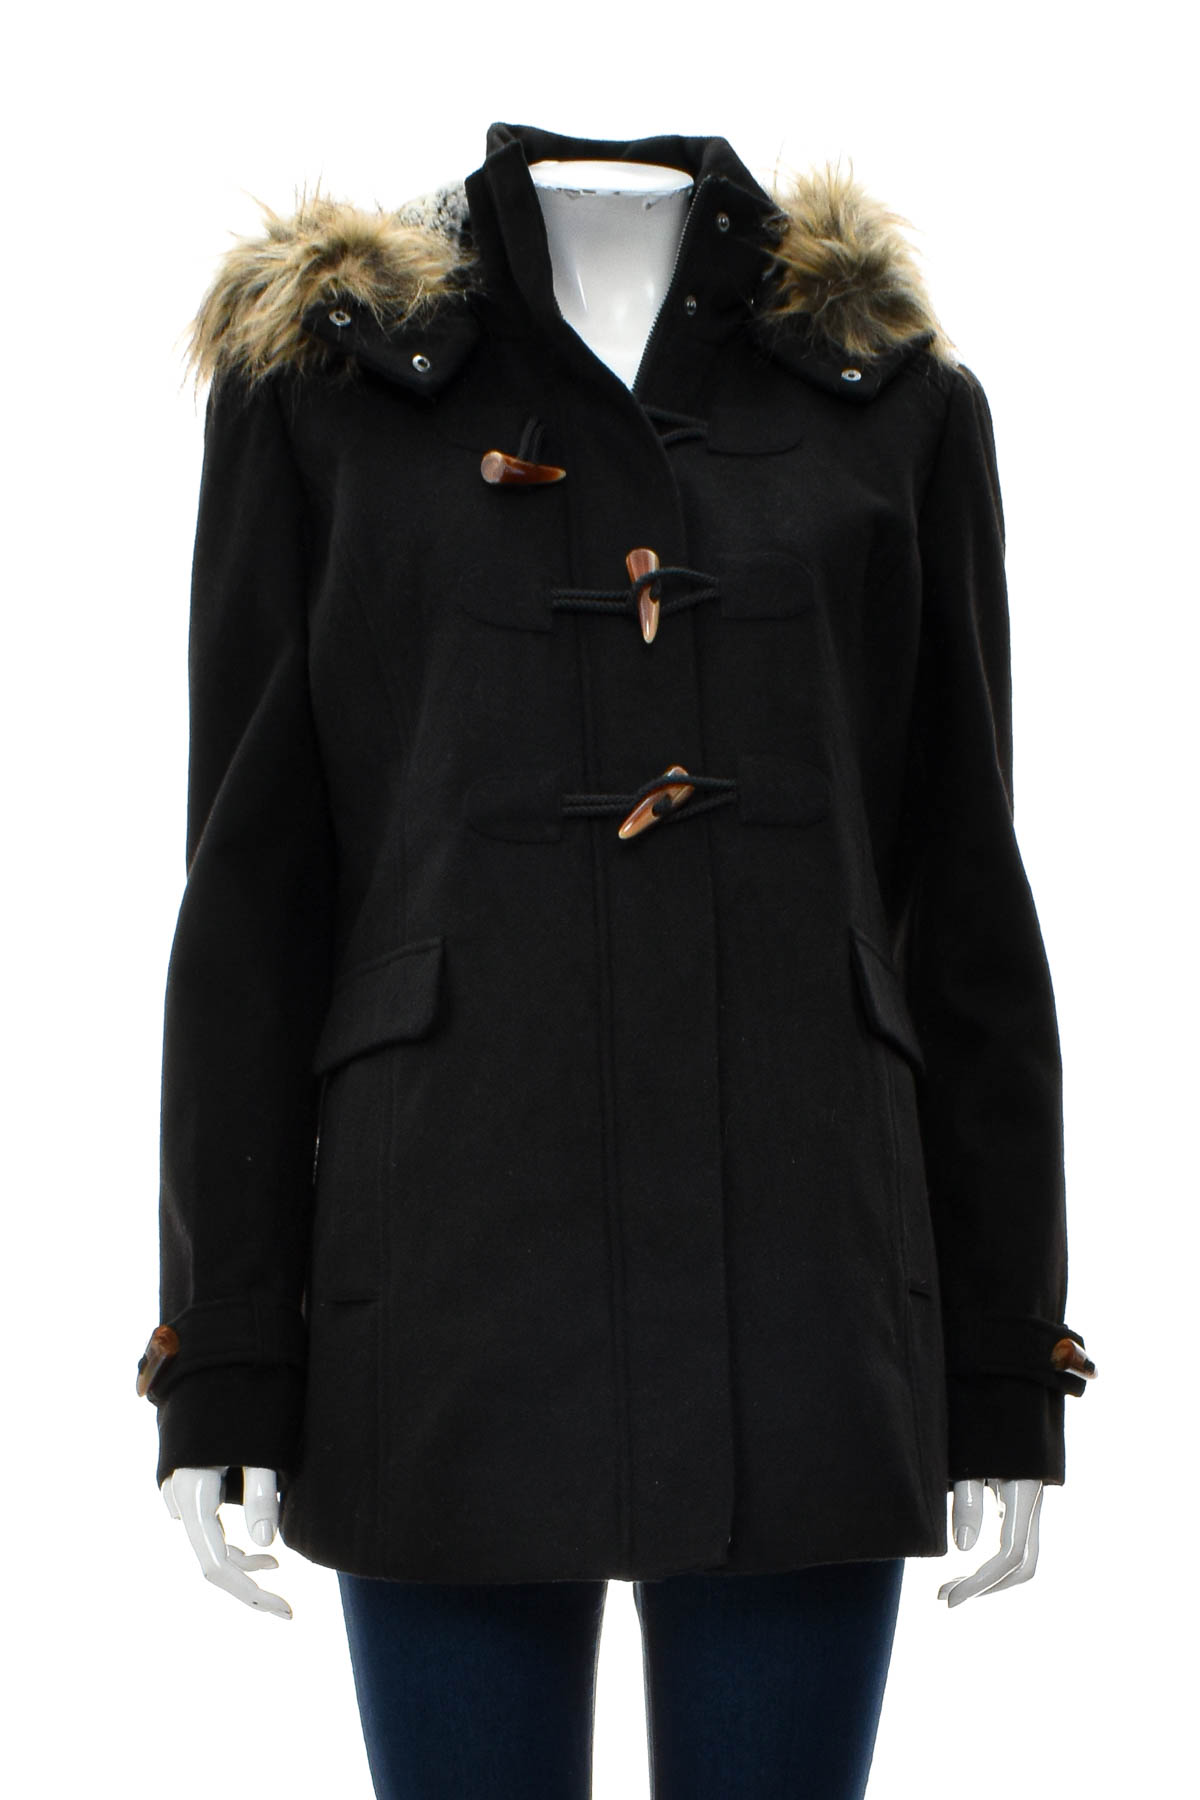 Γυναικείο παλτό - TOM TAILOR Denim - 0